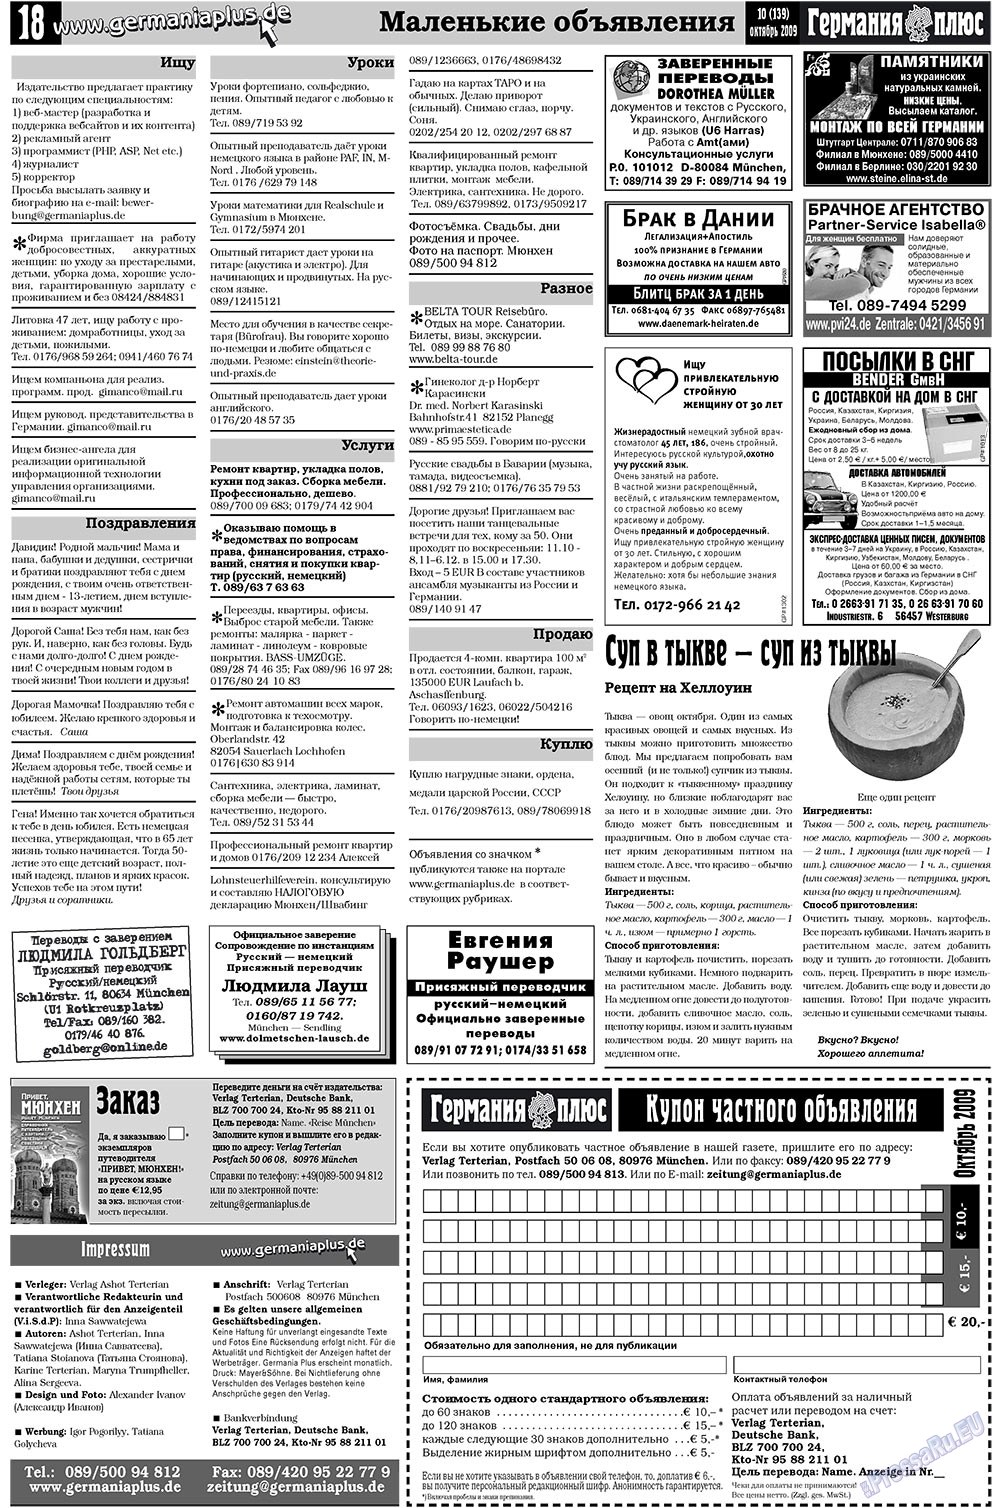 Германия плюс, газета. 2009 №10 стр.18